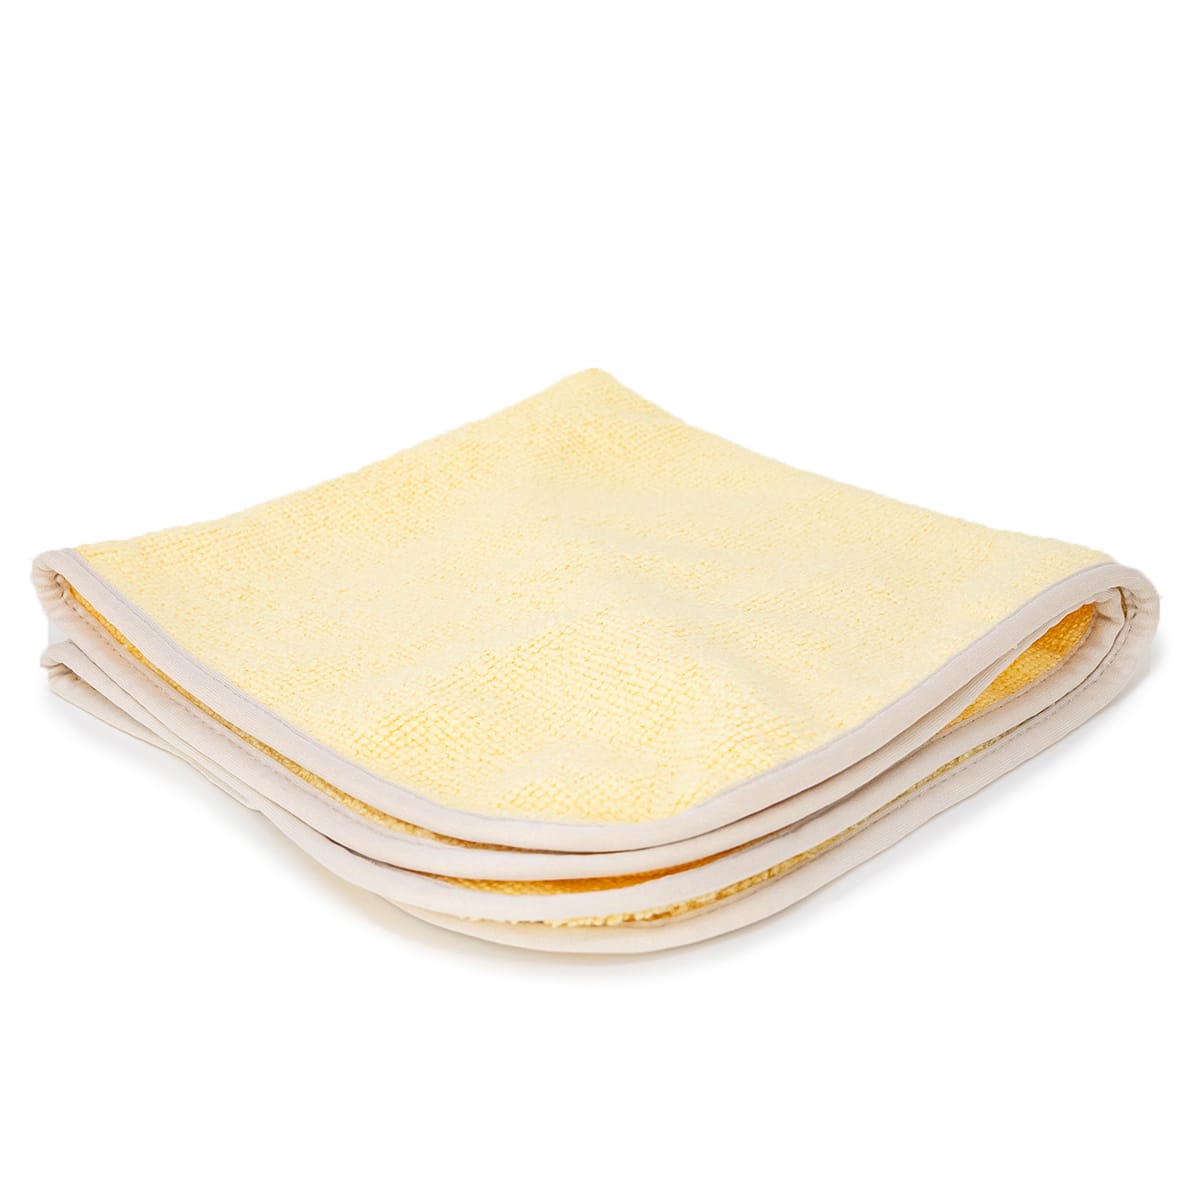 400 gsm Microfiber Detailing Towels - 5-Pack